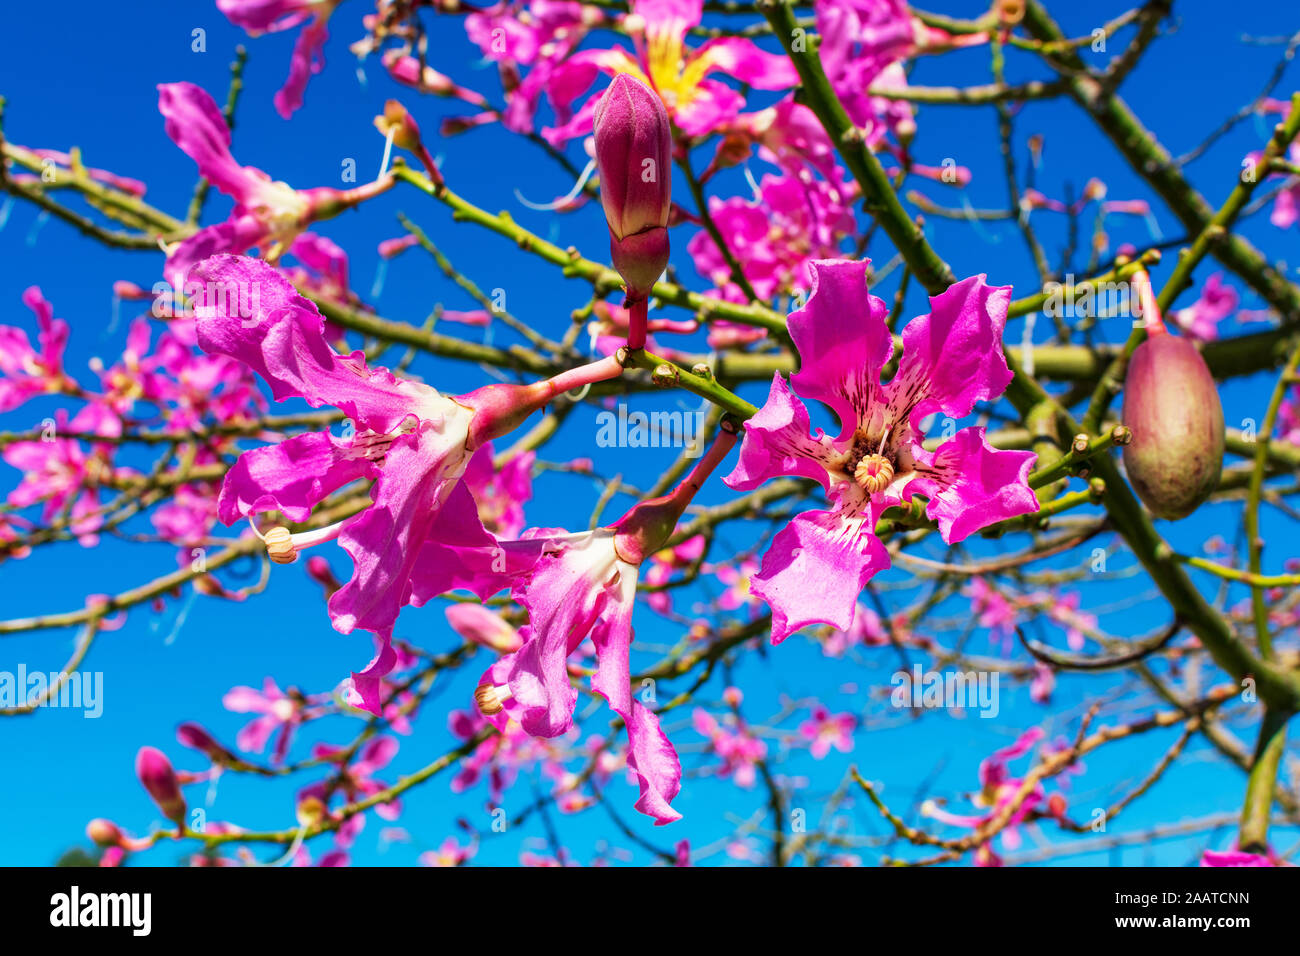 Nếu bạn muốn thưởng thức vẻ đẹp tuyệt vời của thiên nhiên, hãy click vào ảnh liên quan đến floss silk tree ngay! Loài cây này được biết đến với những bông hoa rực rỡ, đặc biệt là vào mùa thu. Hãy xem trong ảnh, những cánh hoa được nở rộ và tô điểm cho không gian xung quanh trở nên thật tuyệt vời!